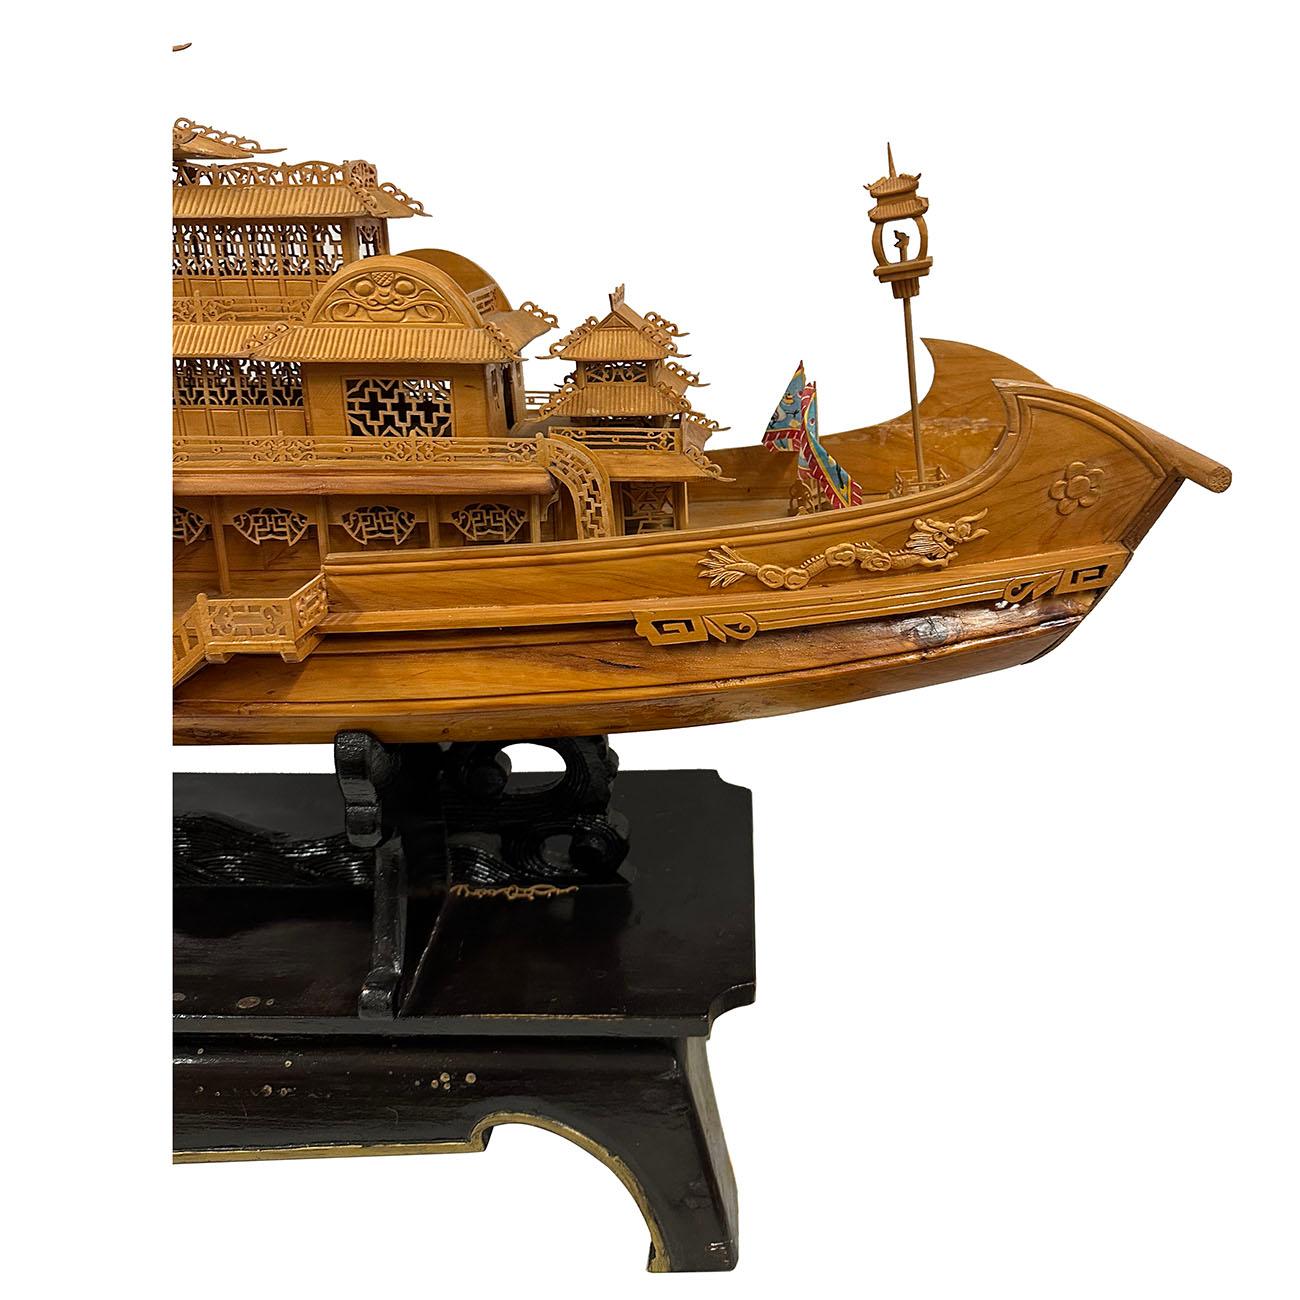 Ce grand modèle de bateau-dragon impérial a été sculpté de manière complexe et élaborée avec des treillis et des détails brillants sur le support d'exposition. Il s'agit d'un véritable palais royal construit sur le navire. L'ensemble du navire a été